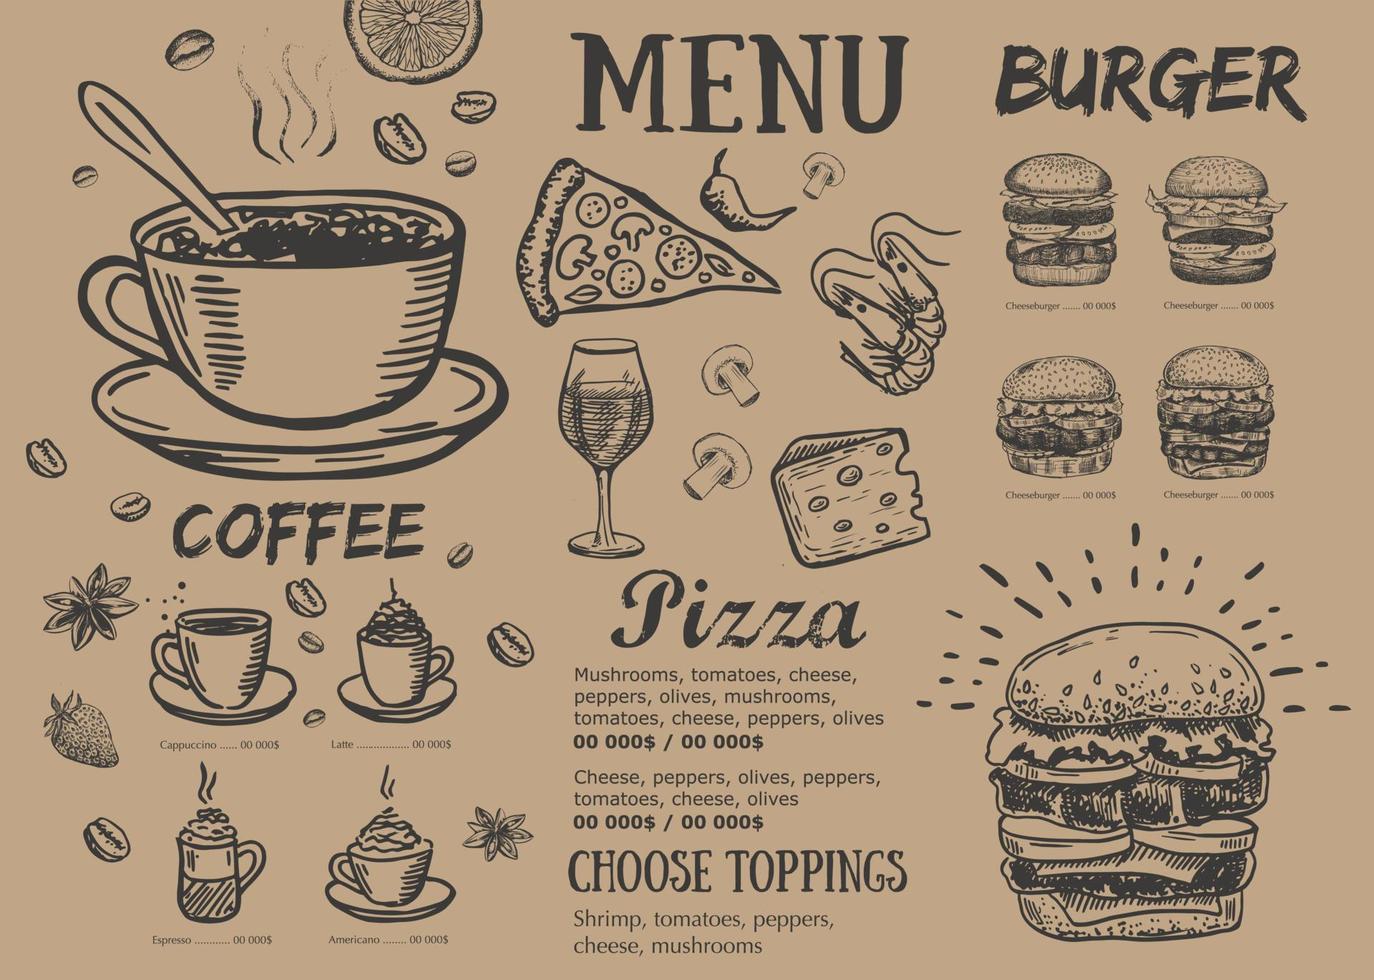 menu du restaurant, conception de modèles .. dépliant alimentaire. style dessiné à la main. illustration vectorielle. vecteur